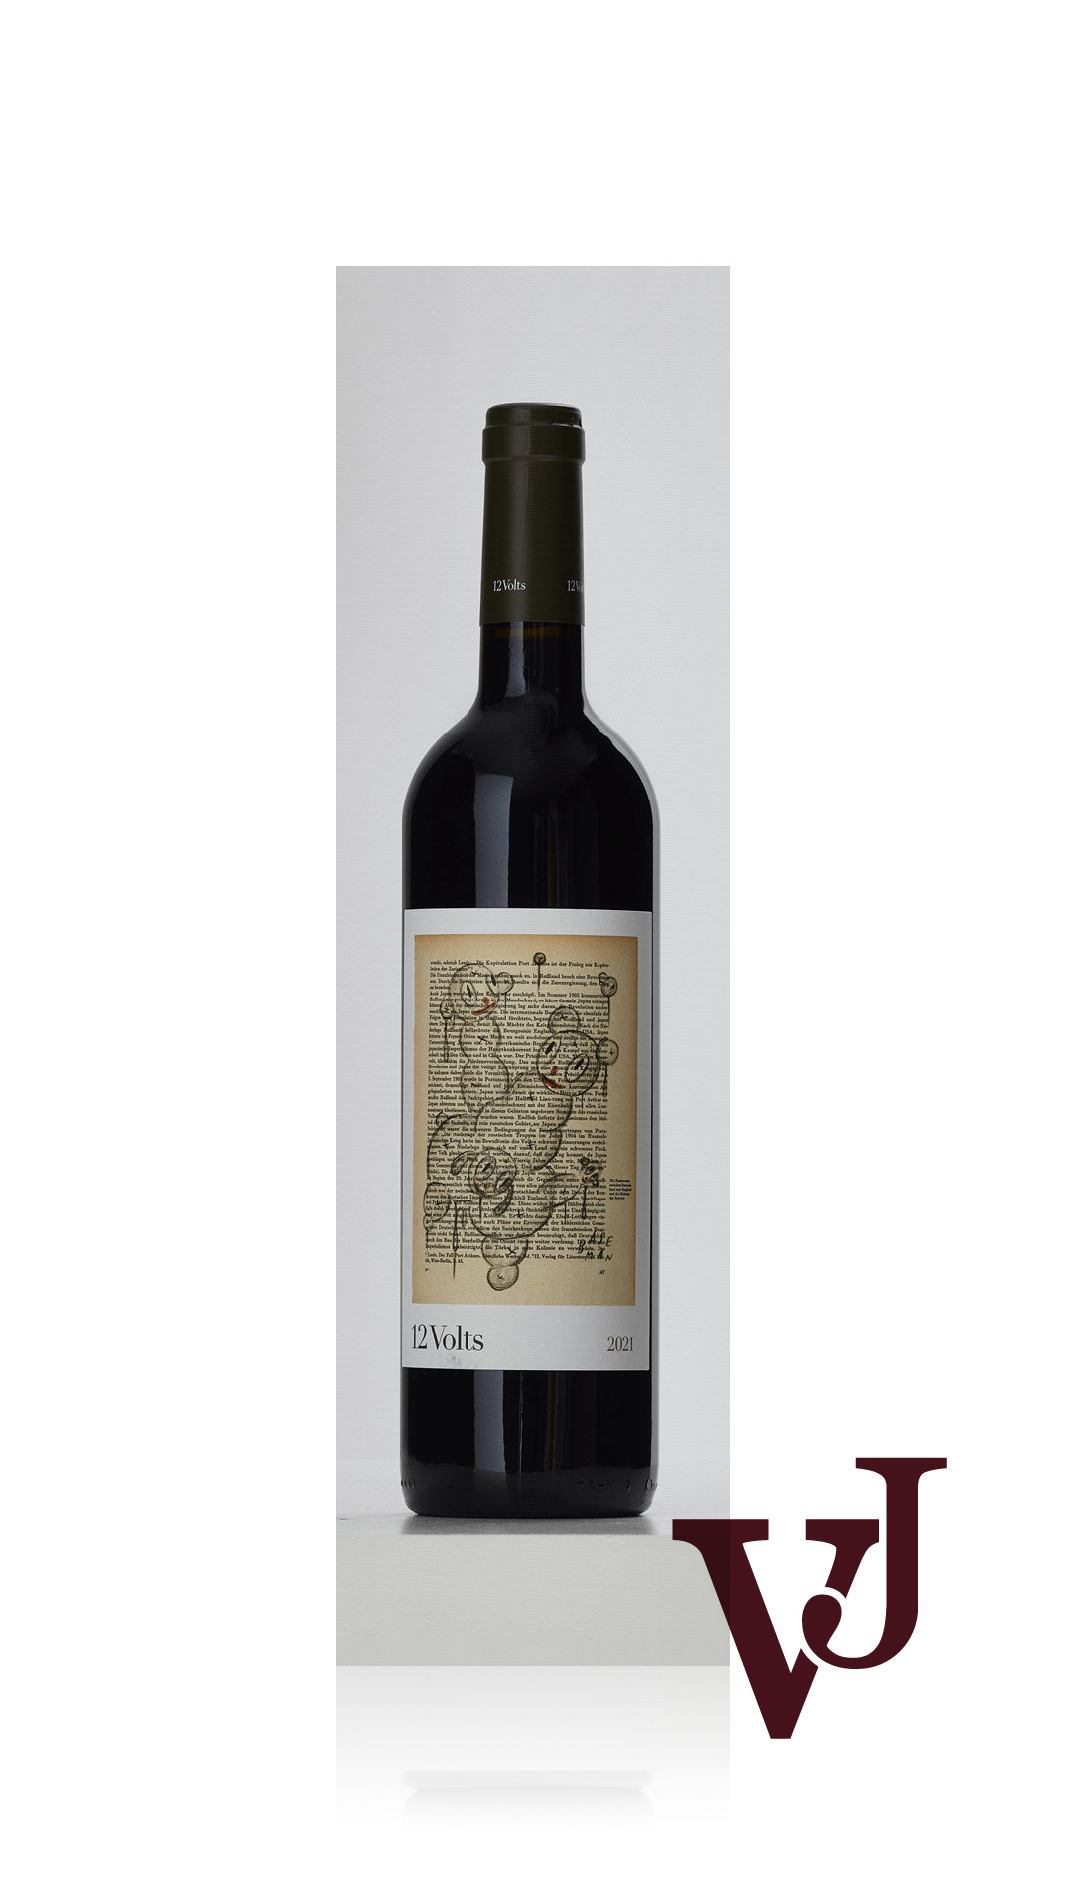 Rött Vin - 4Kilos 12 Volts 2021 artikel nummer 5878801 från producenten 4Kilos från området Spanien